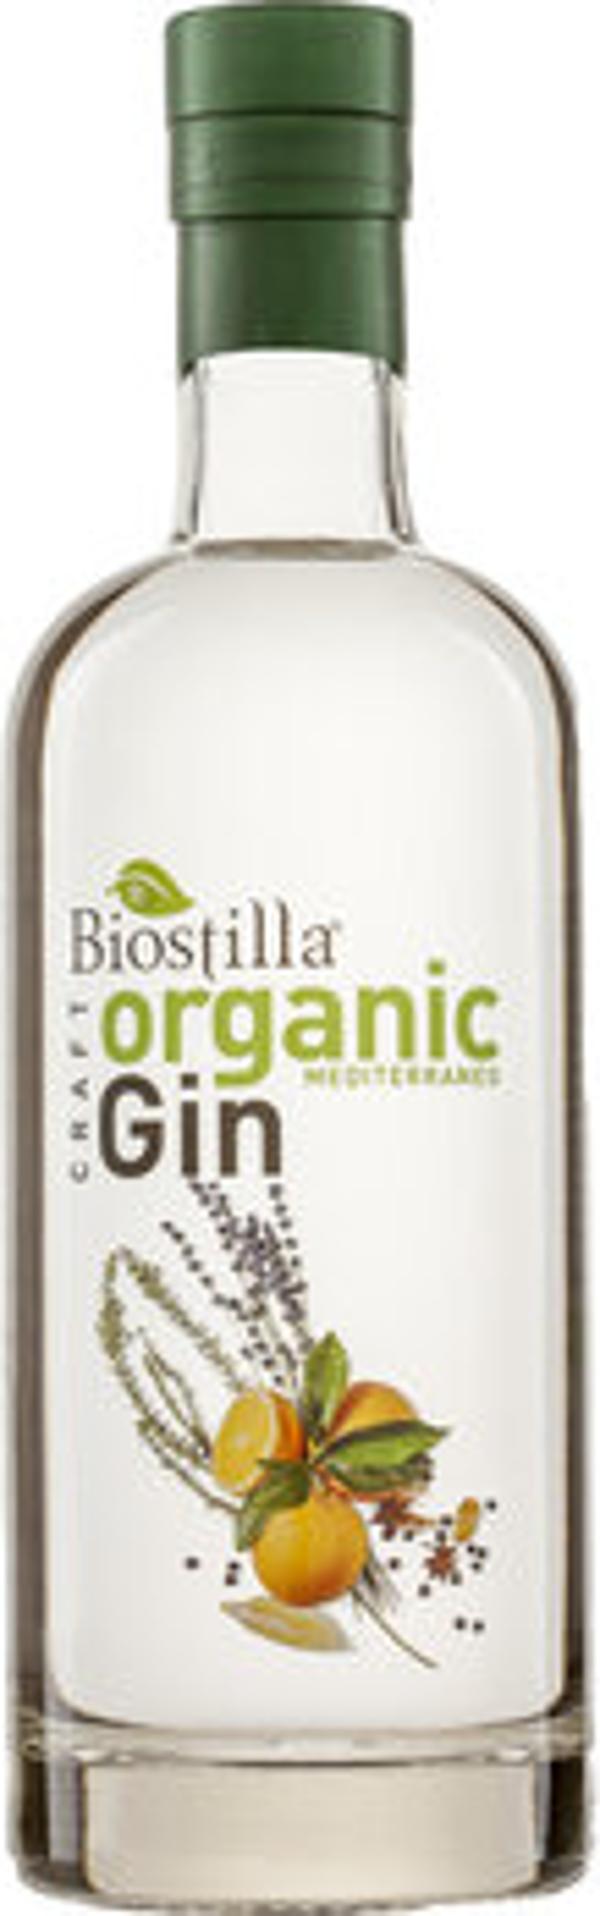 Produktfoto zu Biostilla Gin Mediterraneo